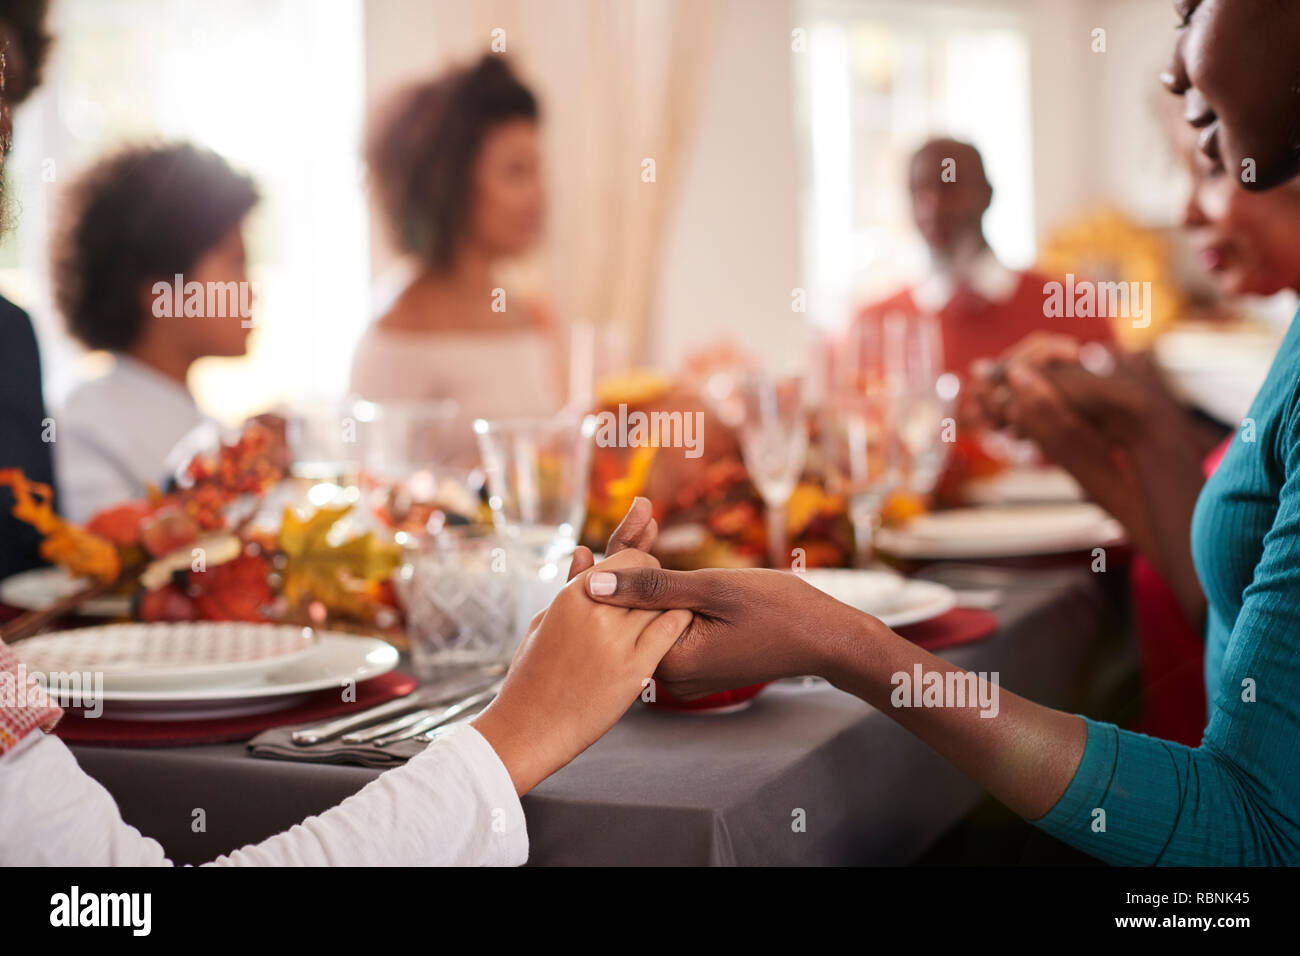 Los jóvenes negros y su hija adulta manos y diciendo la gracia con su familia en la generación de múltiples en la cena de Acción de Gracias, la tabla detalle, centrarse en primer plano Foto de stock